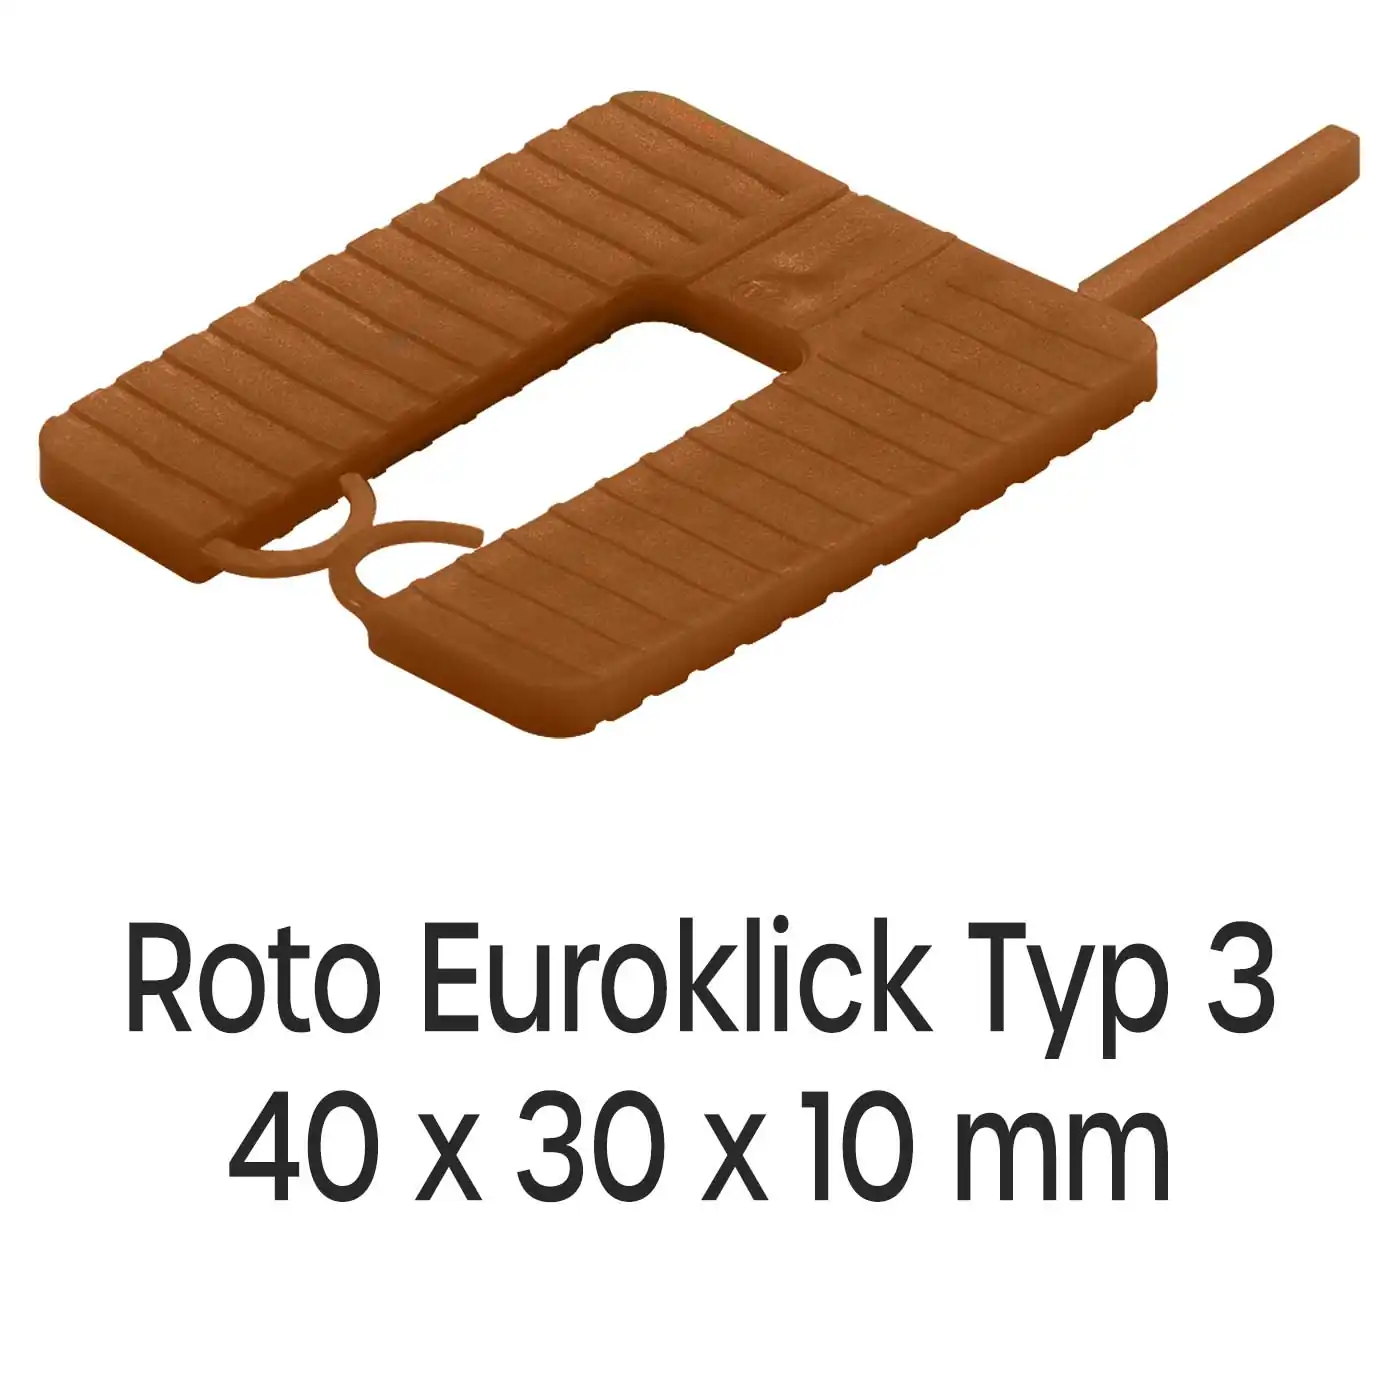 Distanzplatten Roto Euroklick Typ 3 40 x 30 x 10 mm 500 Stück